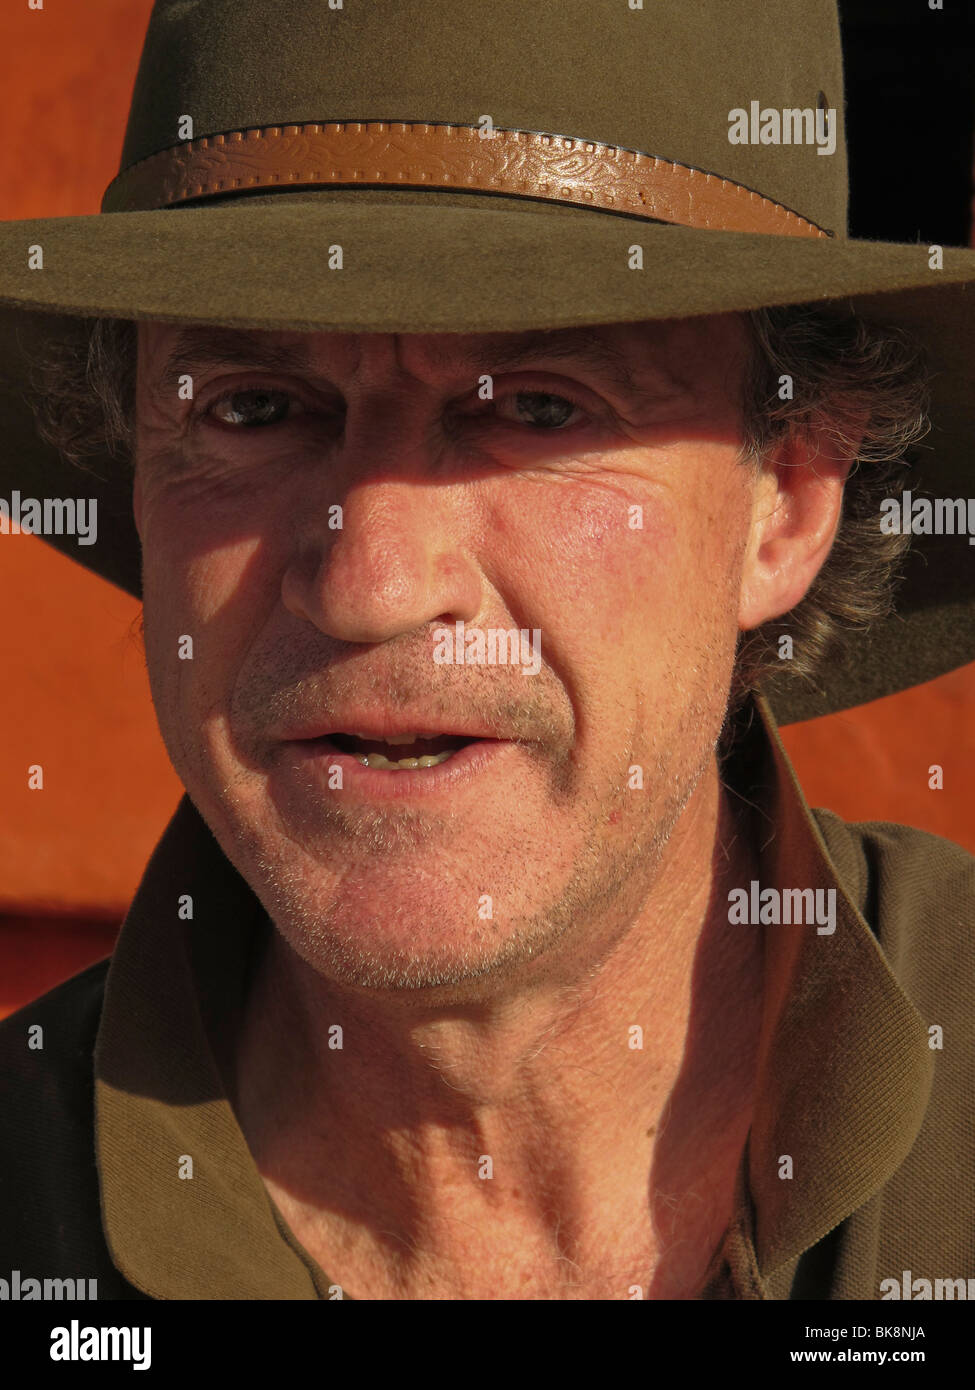 Typisch australische männlich ein Akubra Hut Stockfotografie - Alamy